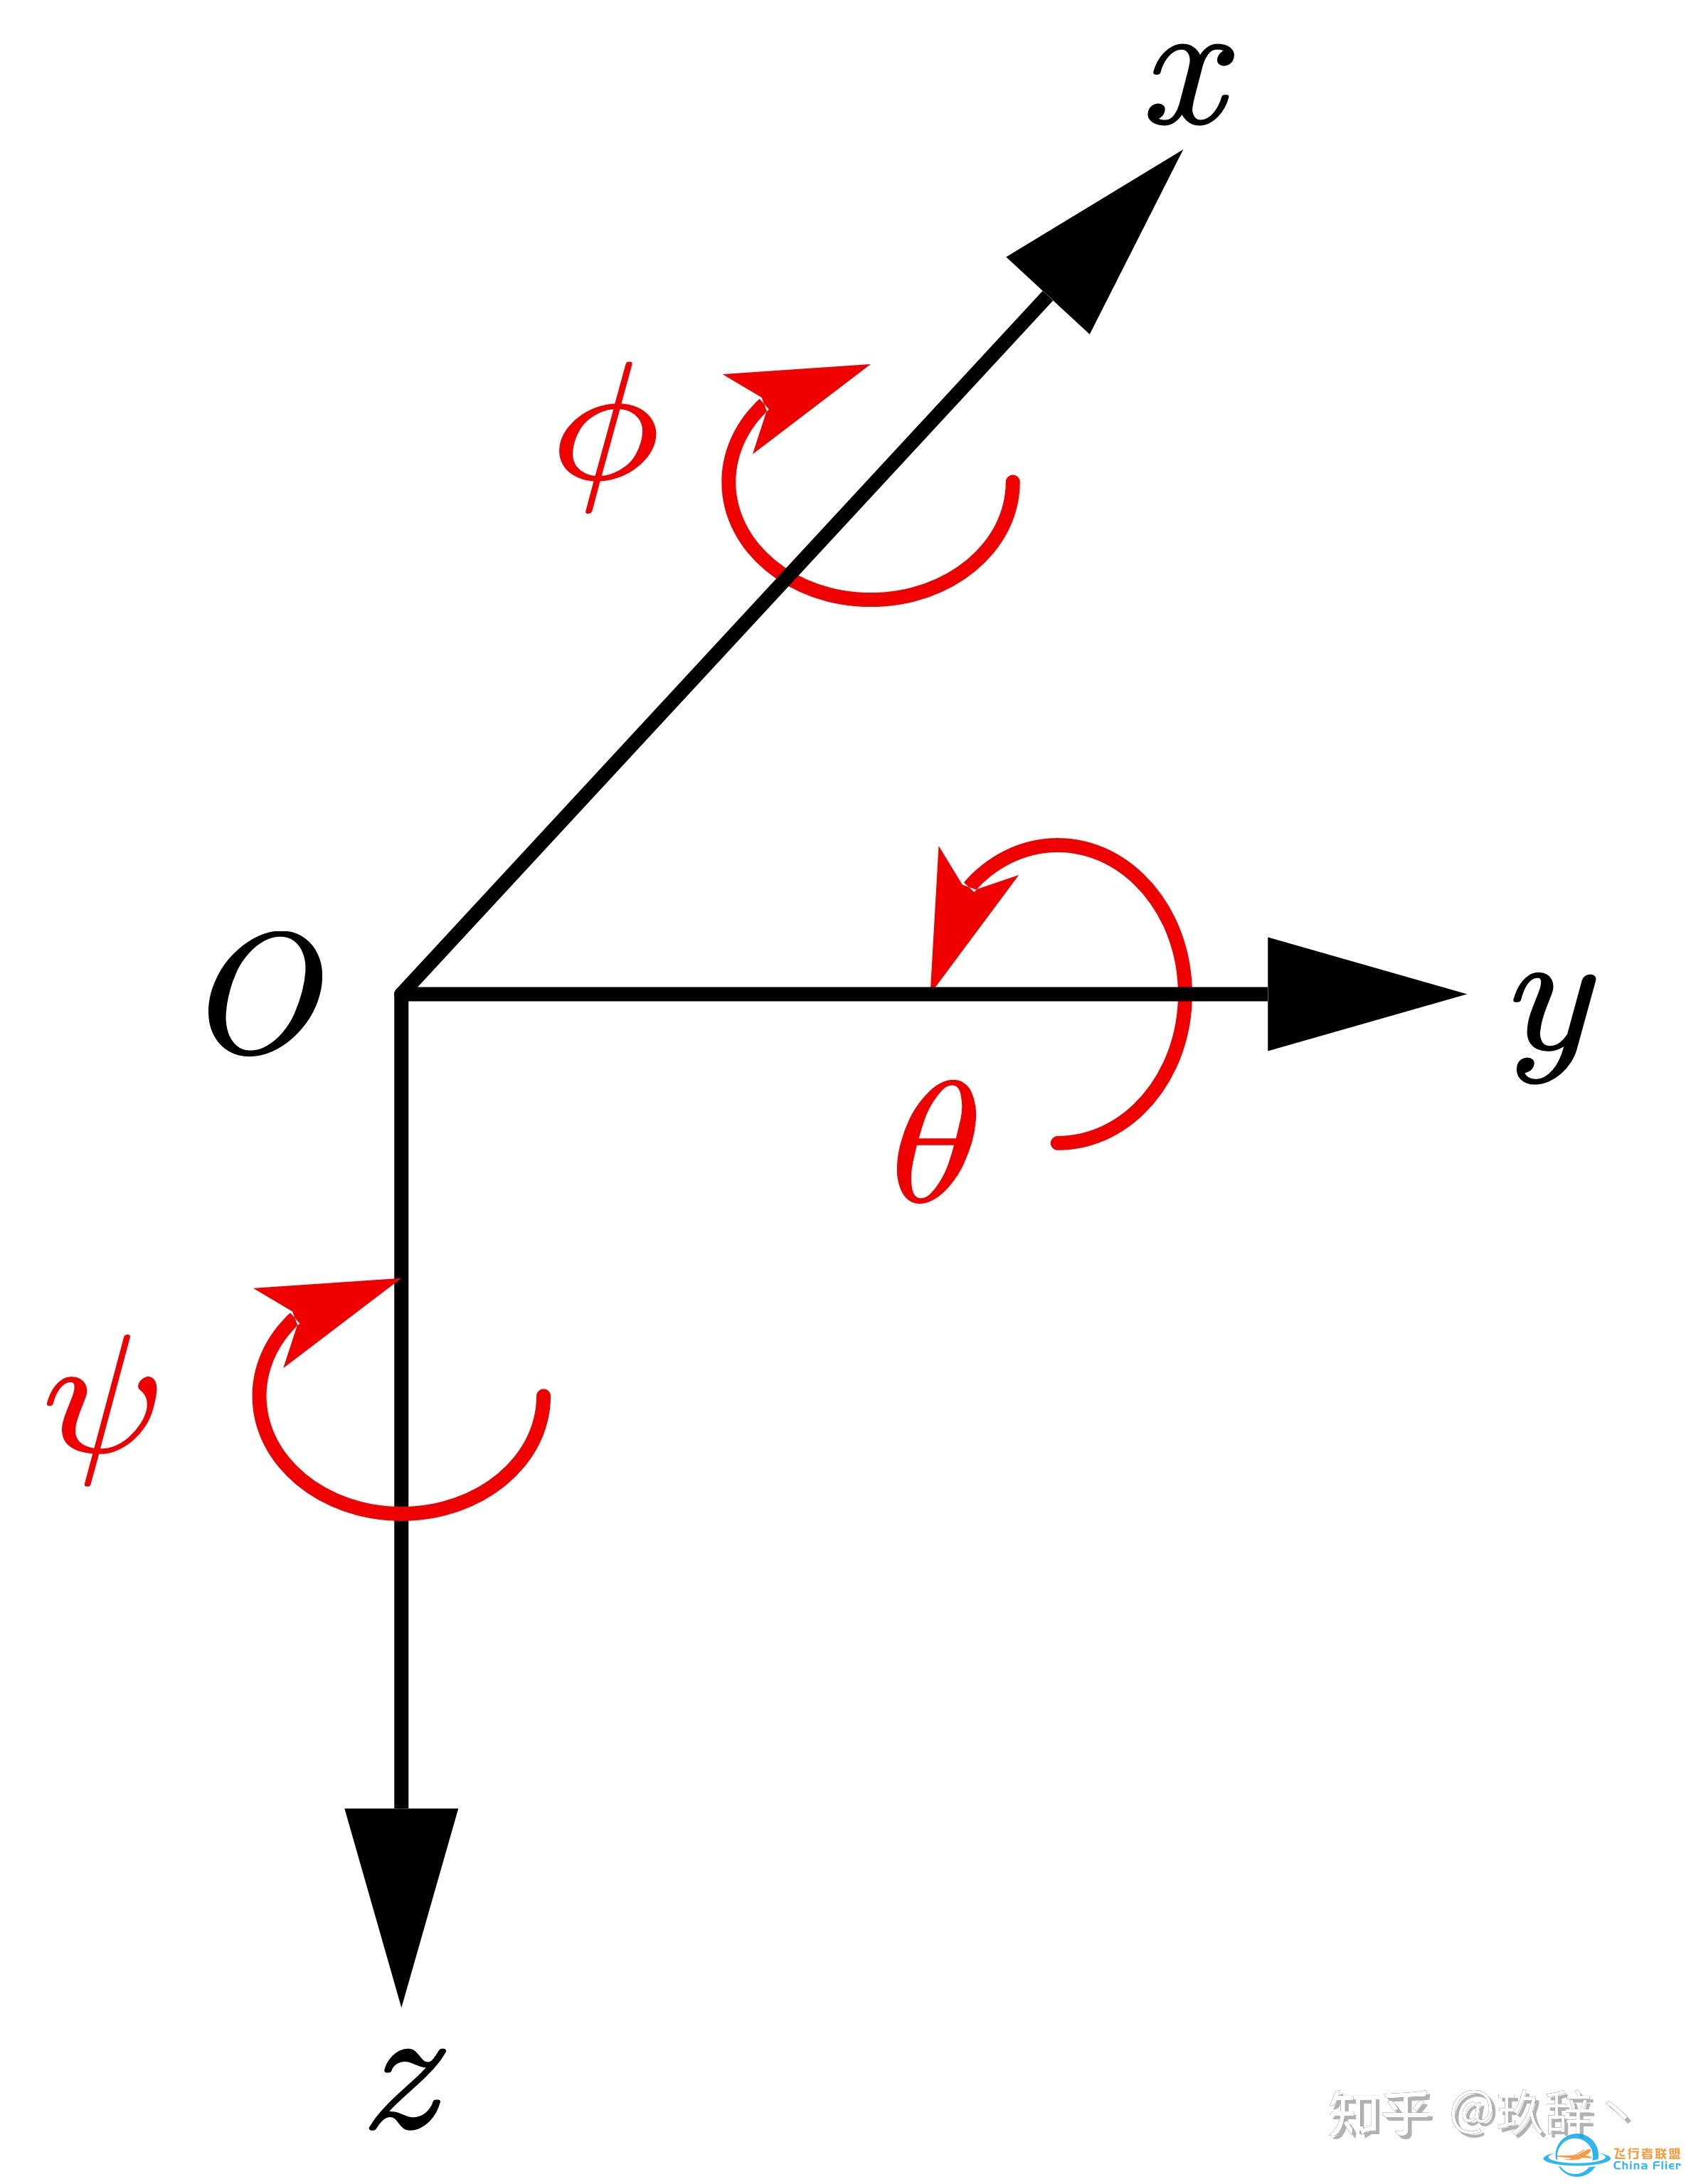 四旋翼飞行器建模（一）— 动力学及运动学方程-5.jpg